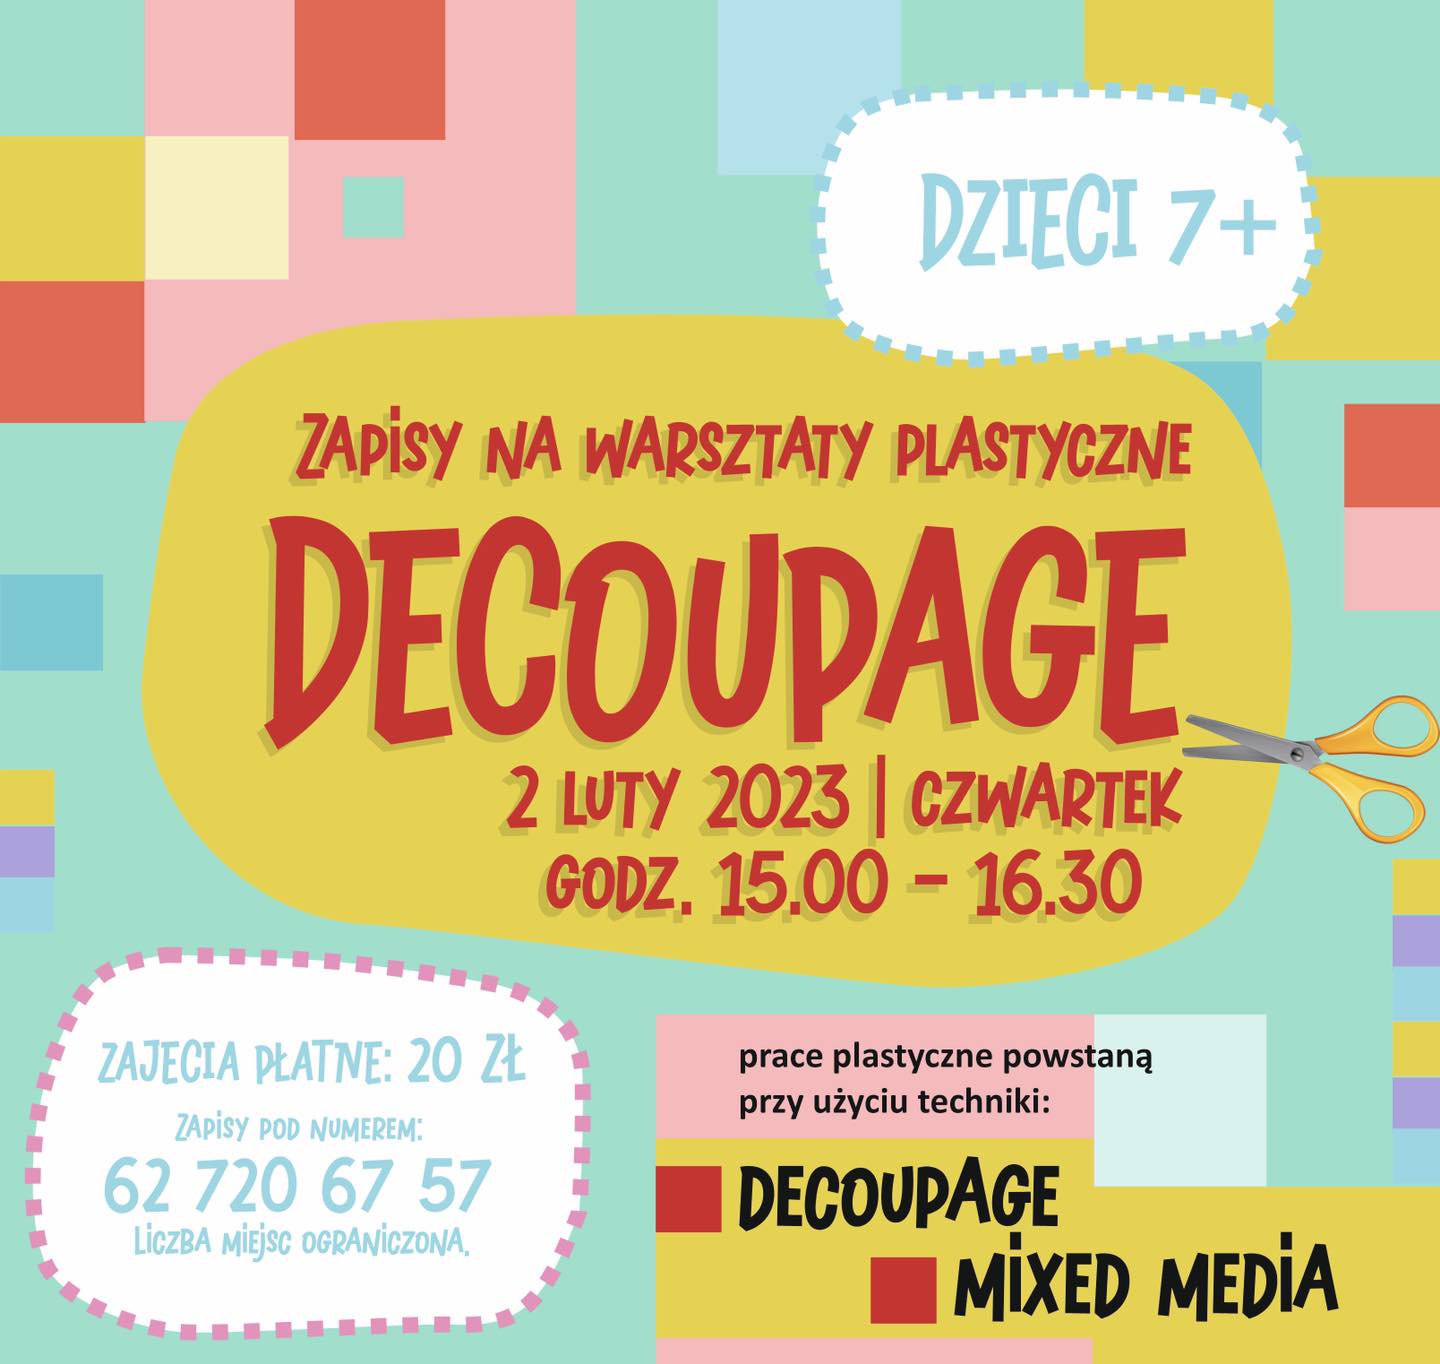 Plakat warsztatów plastycznych DECOUPAGE organizowanych w Zajezdni Kultury w Pleszewie 2 lutego 2023 roku w godzinach 15:00-16:30